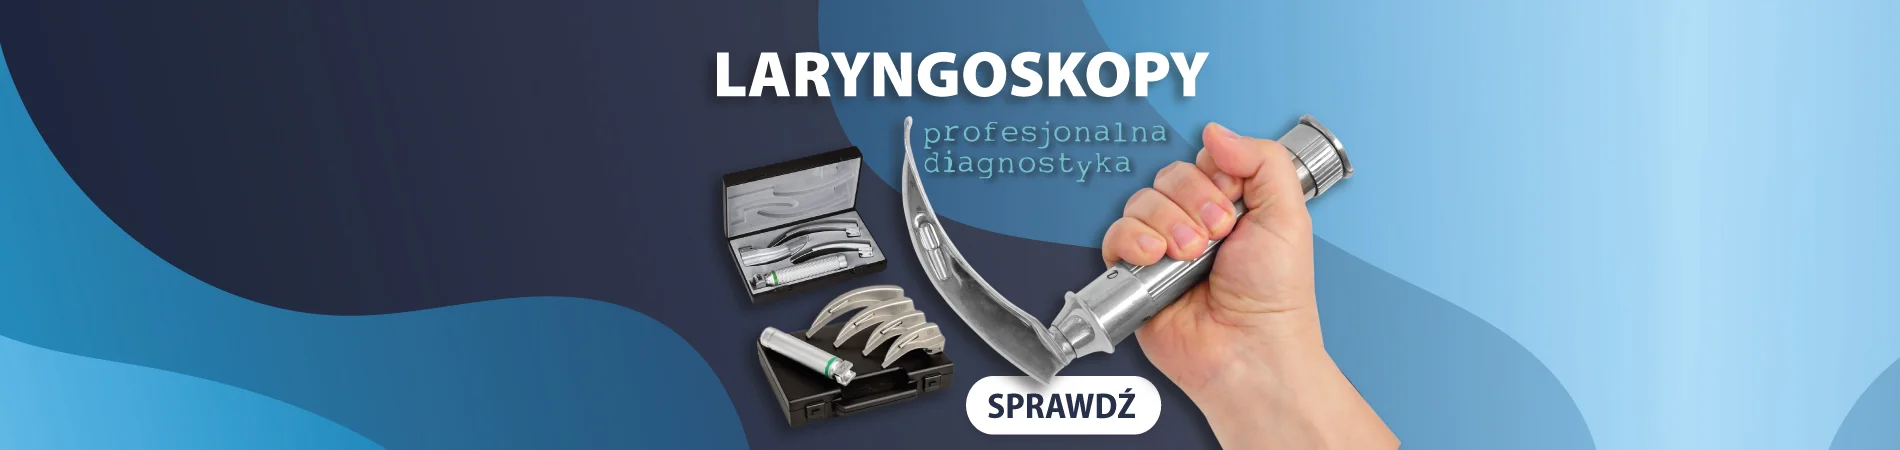 laryngoskopy Mednova.pl